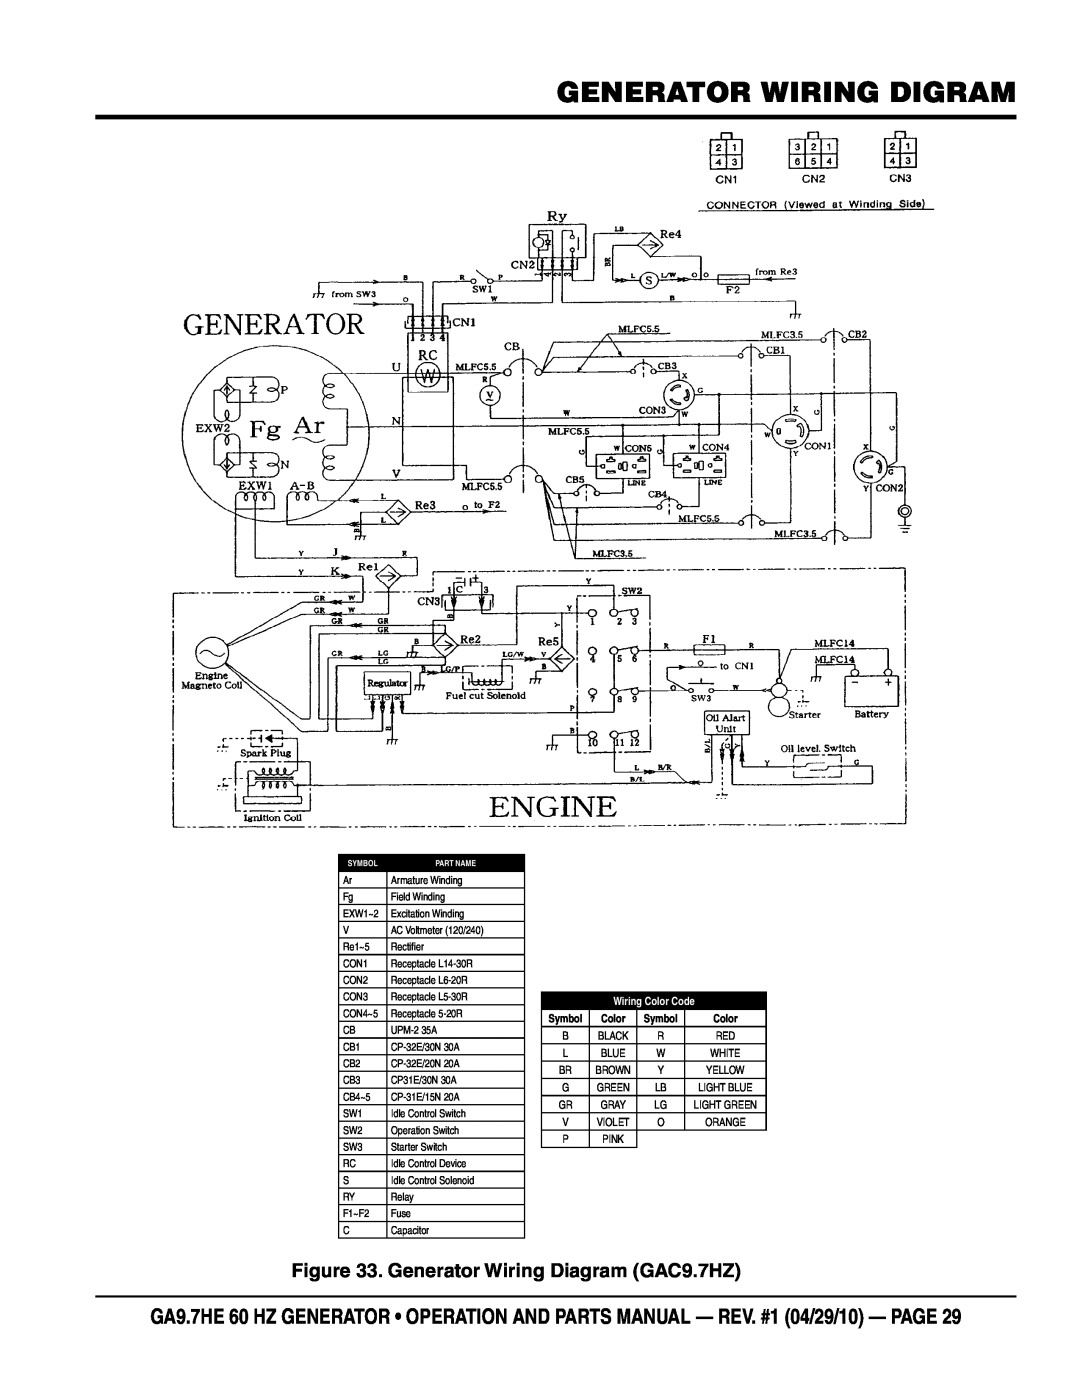 Multiquip ga-9.7HE manual generator wiring digram, Generator Wiring Diagram GAC9.7HZ, Wiring Color Code, Symbol 